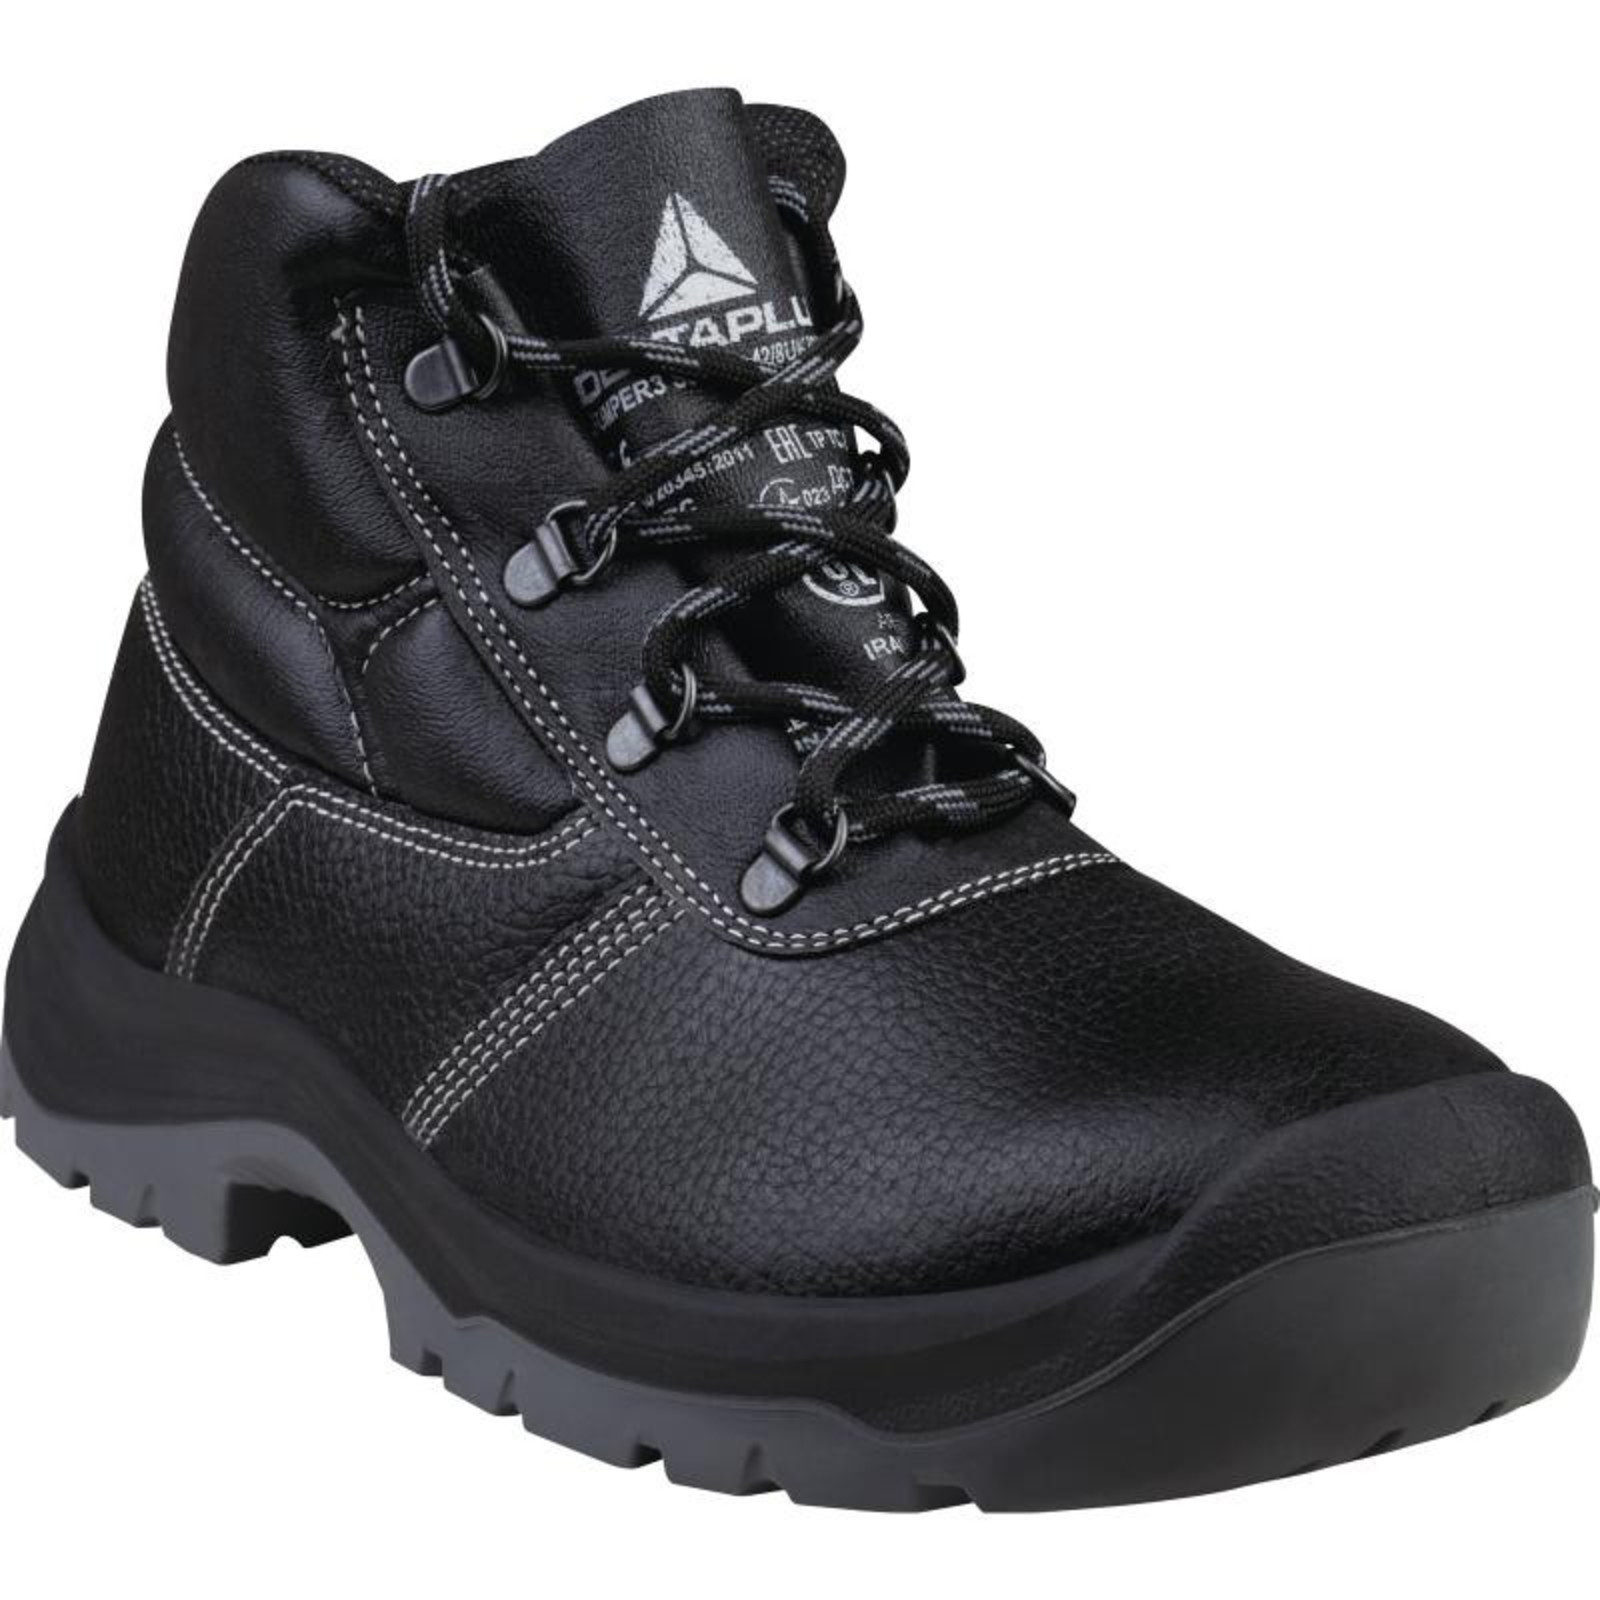 Členková bezpečnostná obuv Delta Plus Jumper3 S3 SRC - veľkosť: 48, farba: čierna